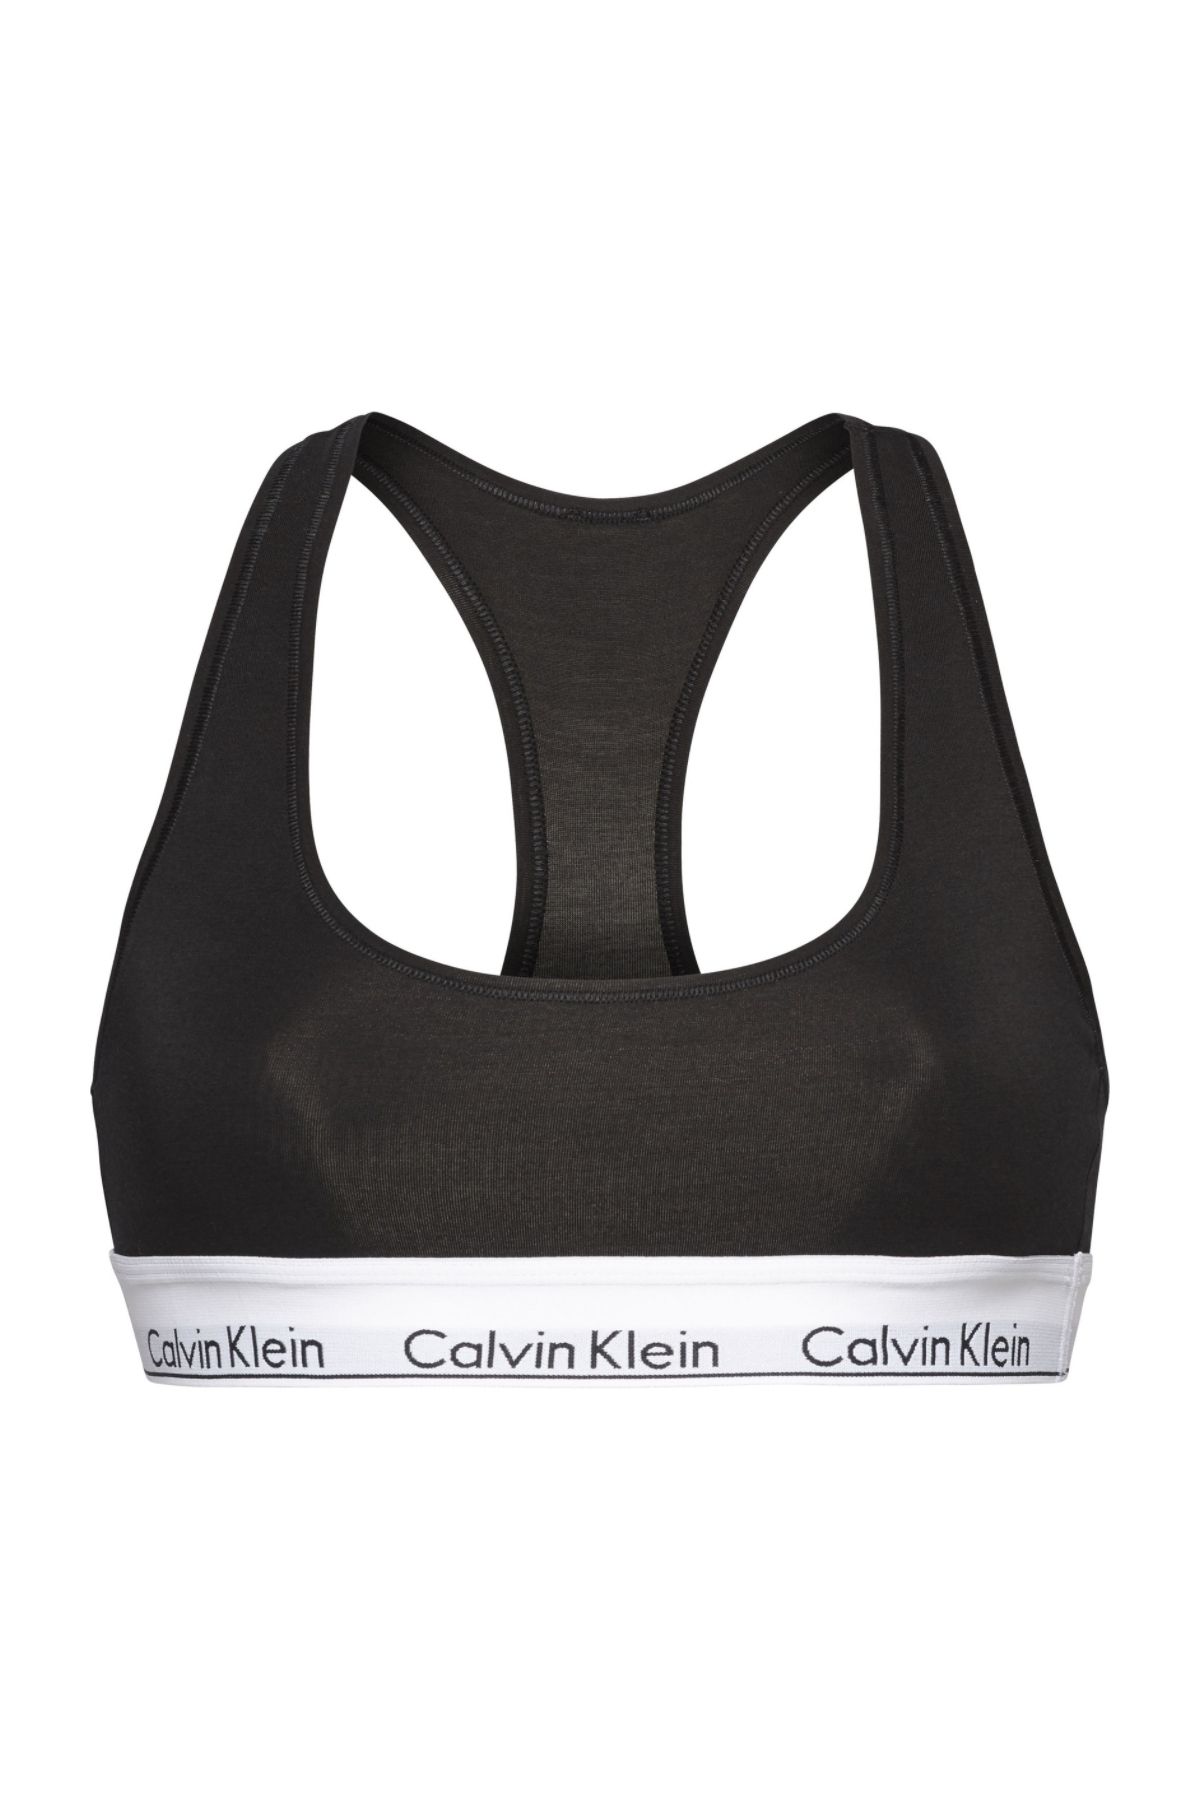 Calvin Klein Red Women Sports Bras Styles, Prices - Trendyol